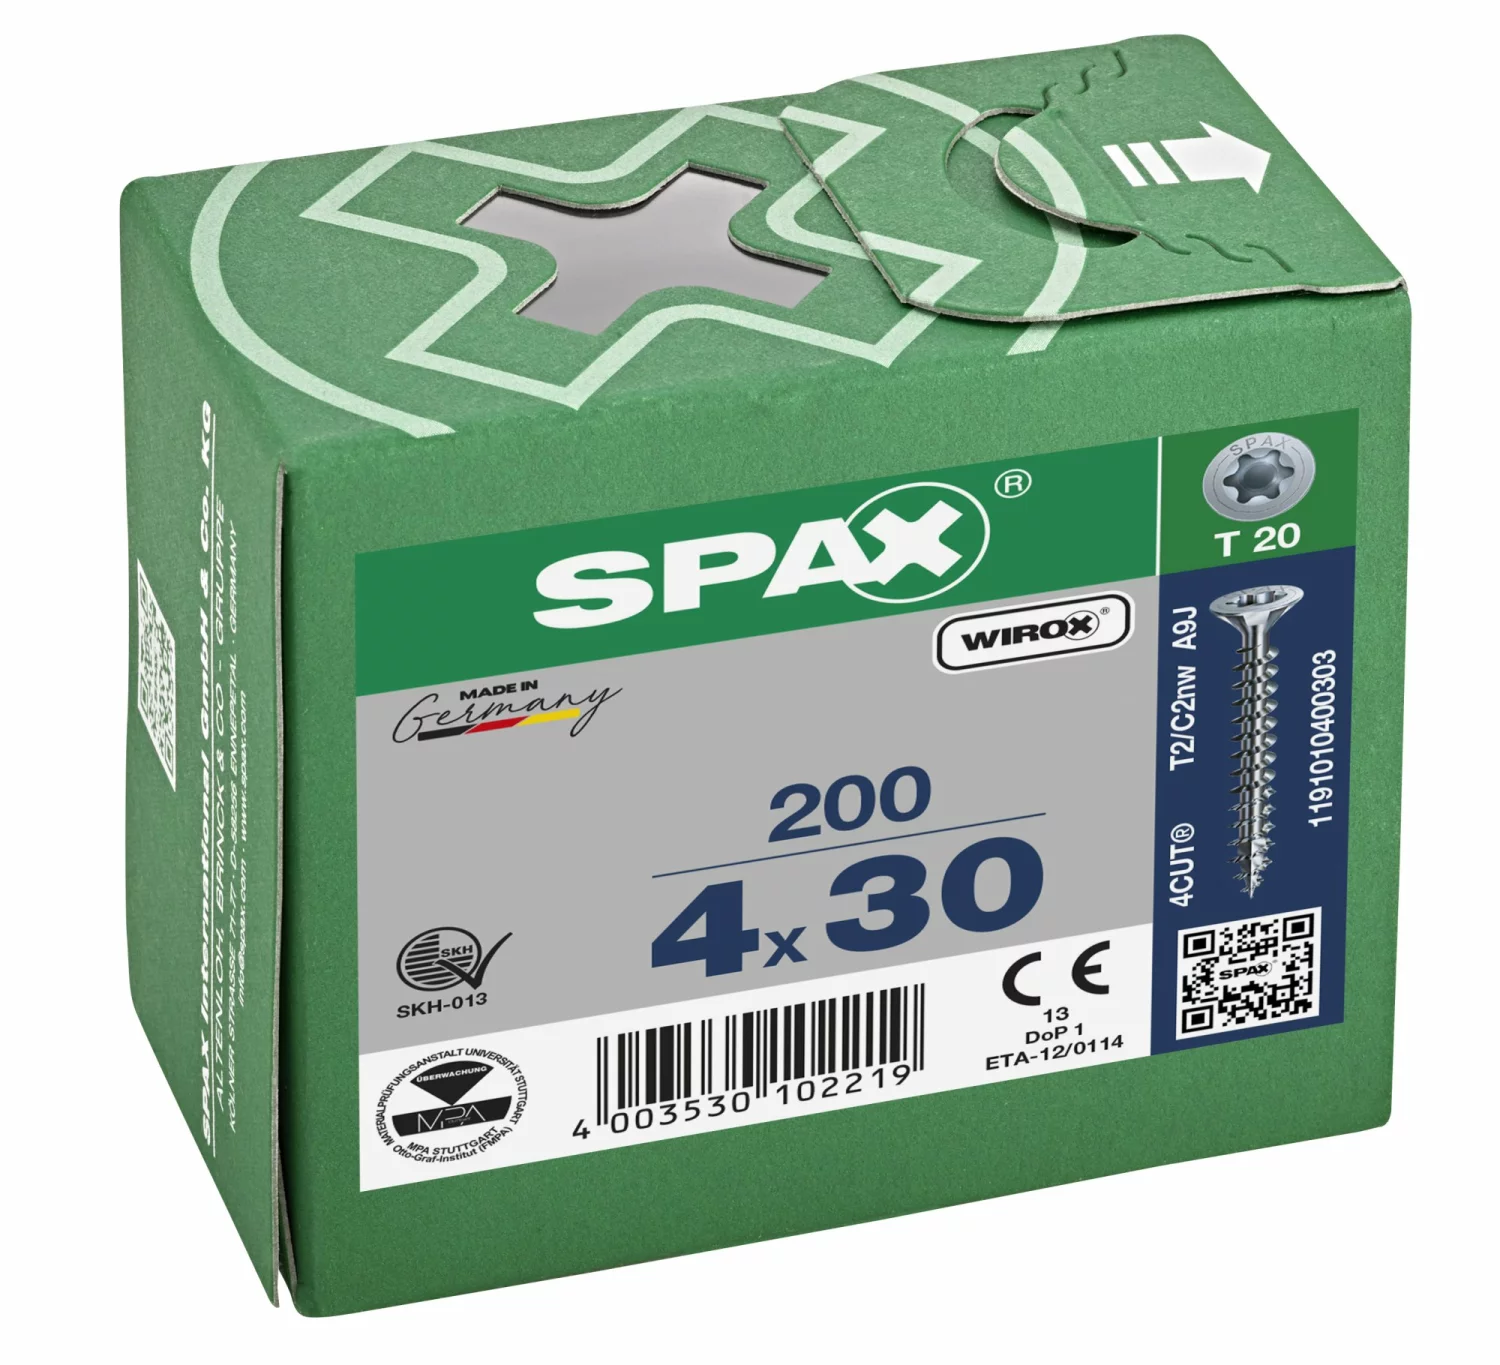 SPAX 1191010400303 Universele schroef, Verzonken kop, 4 x 30, Voldraad, T-STAR plus T20 - WIROX - 200 stuks